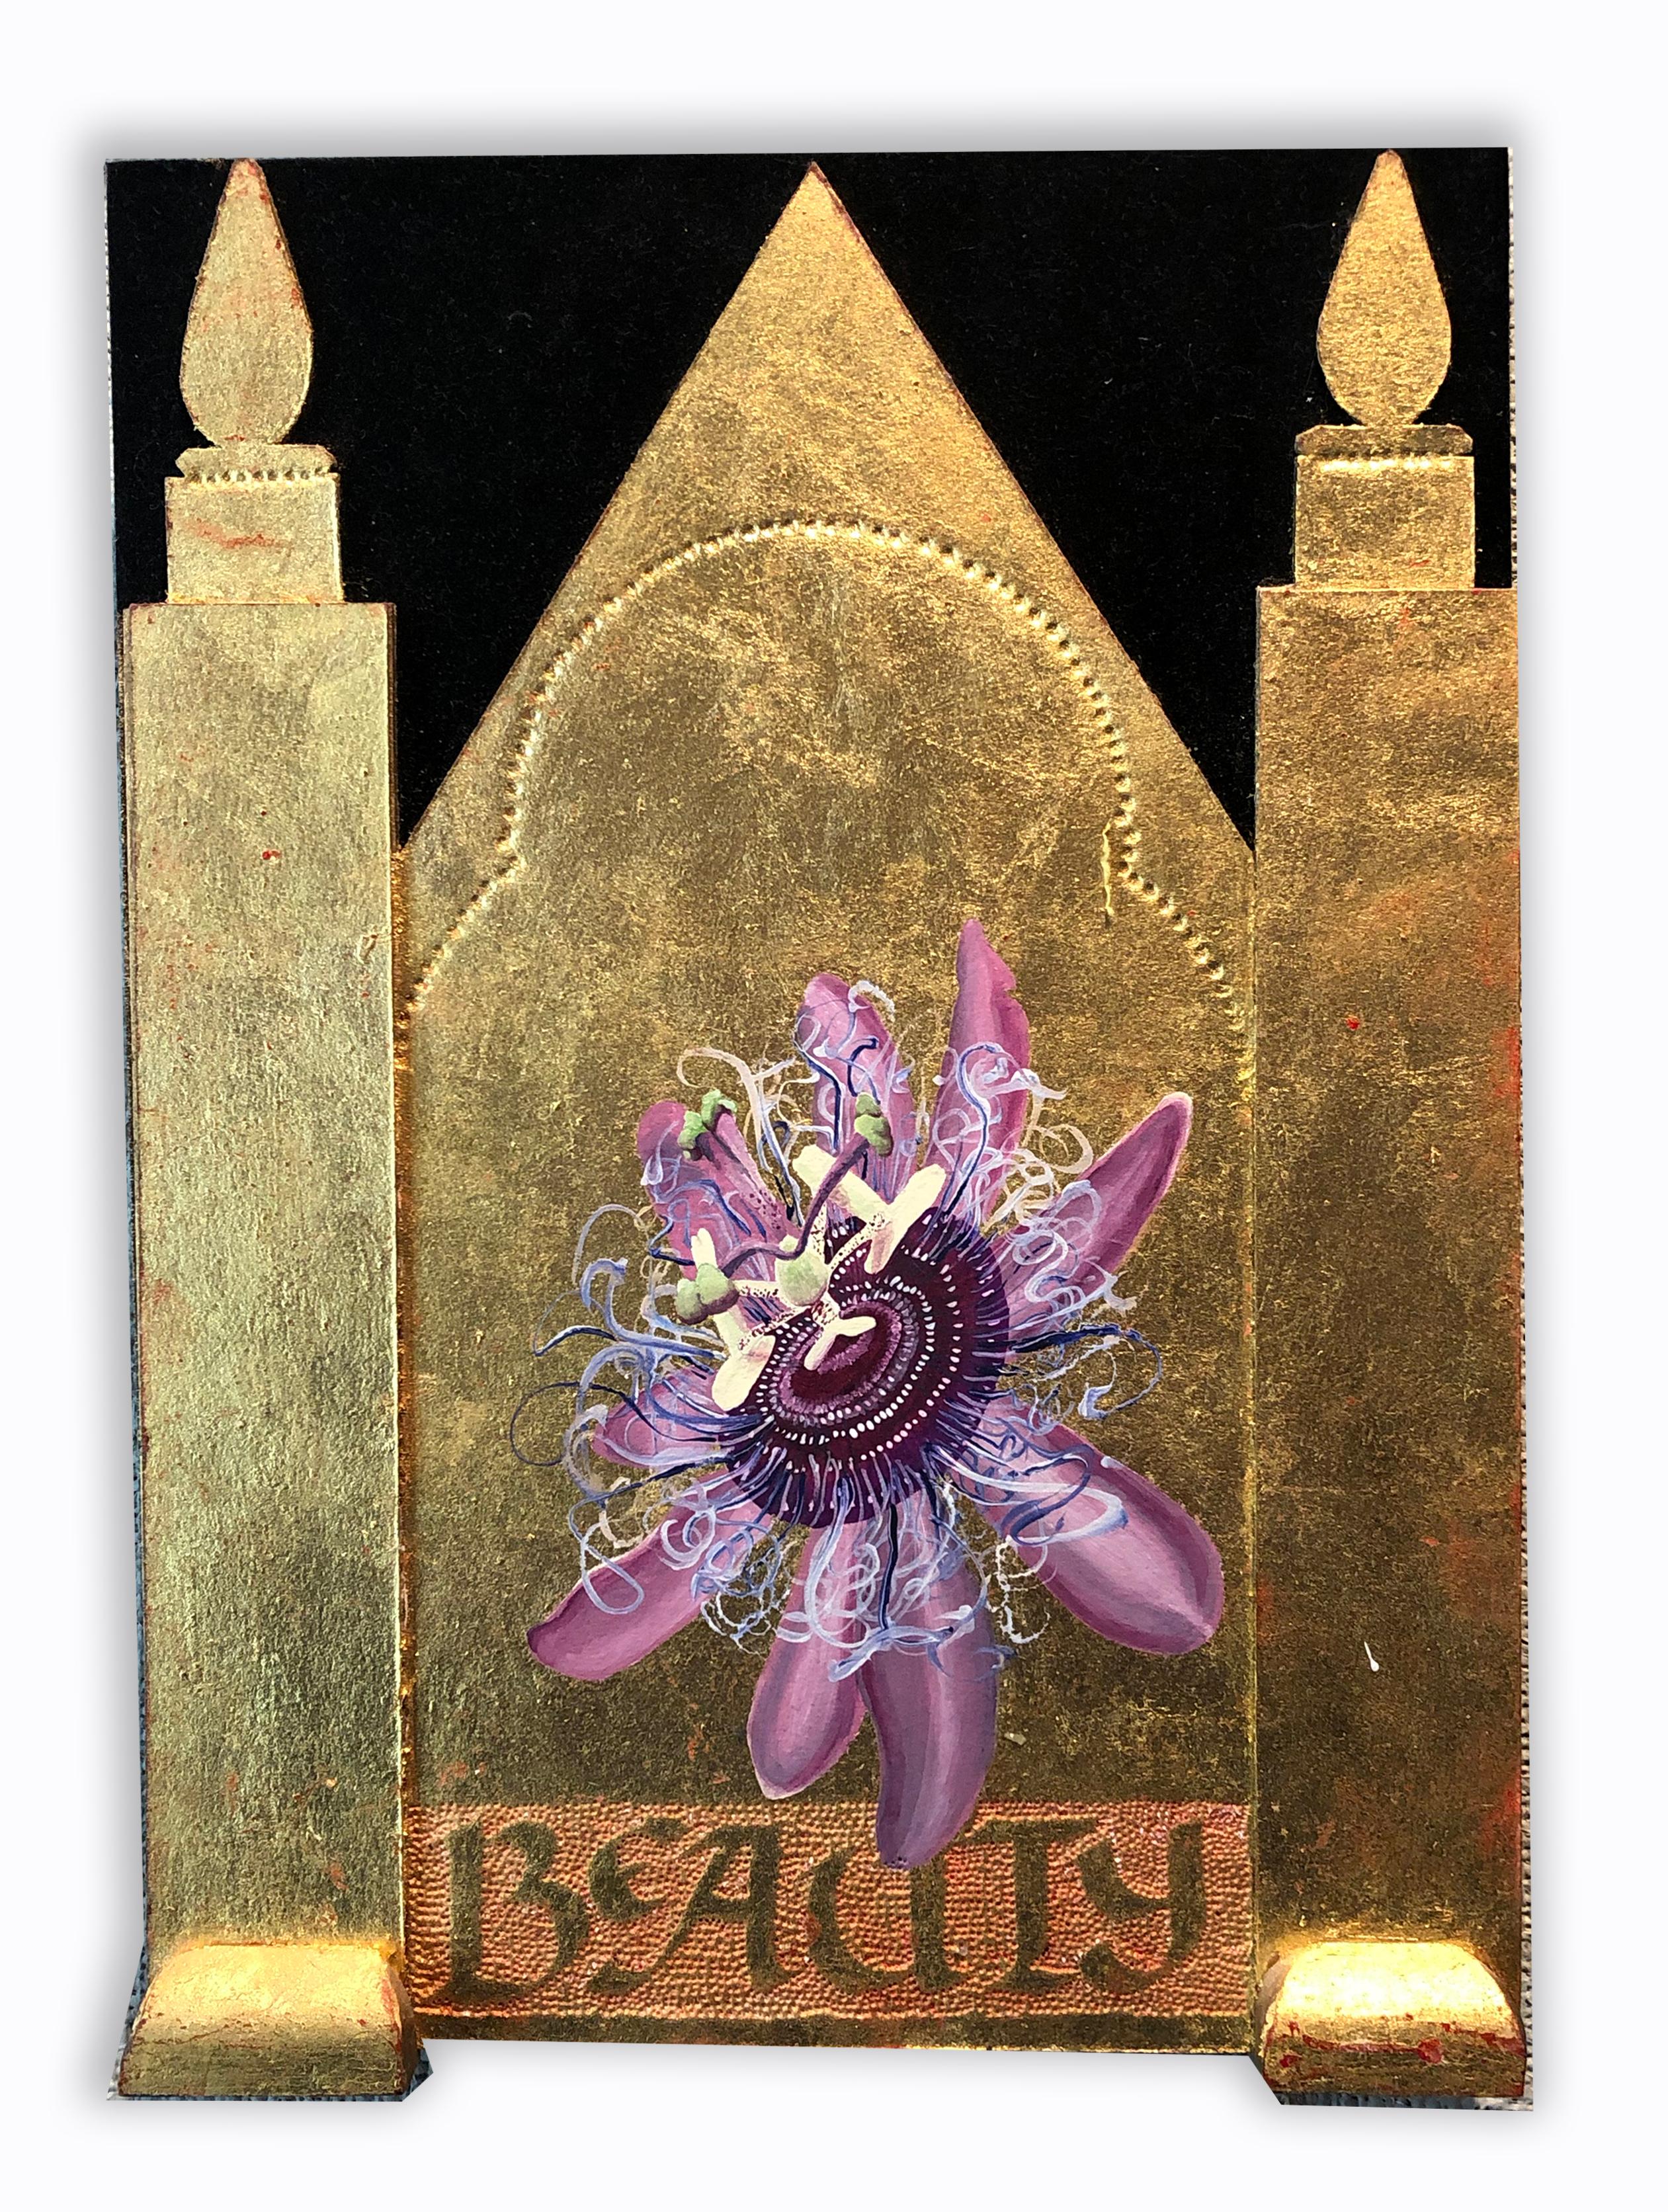 Zeitgenössische Blumen-Wandskulptur in Mischtechnik aus Blattgold und lila Pop-Art-Text – Mixed Media Art von Rosemary Lyons